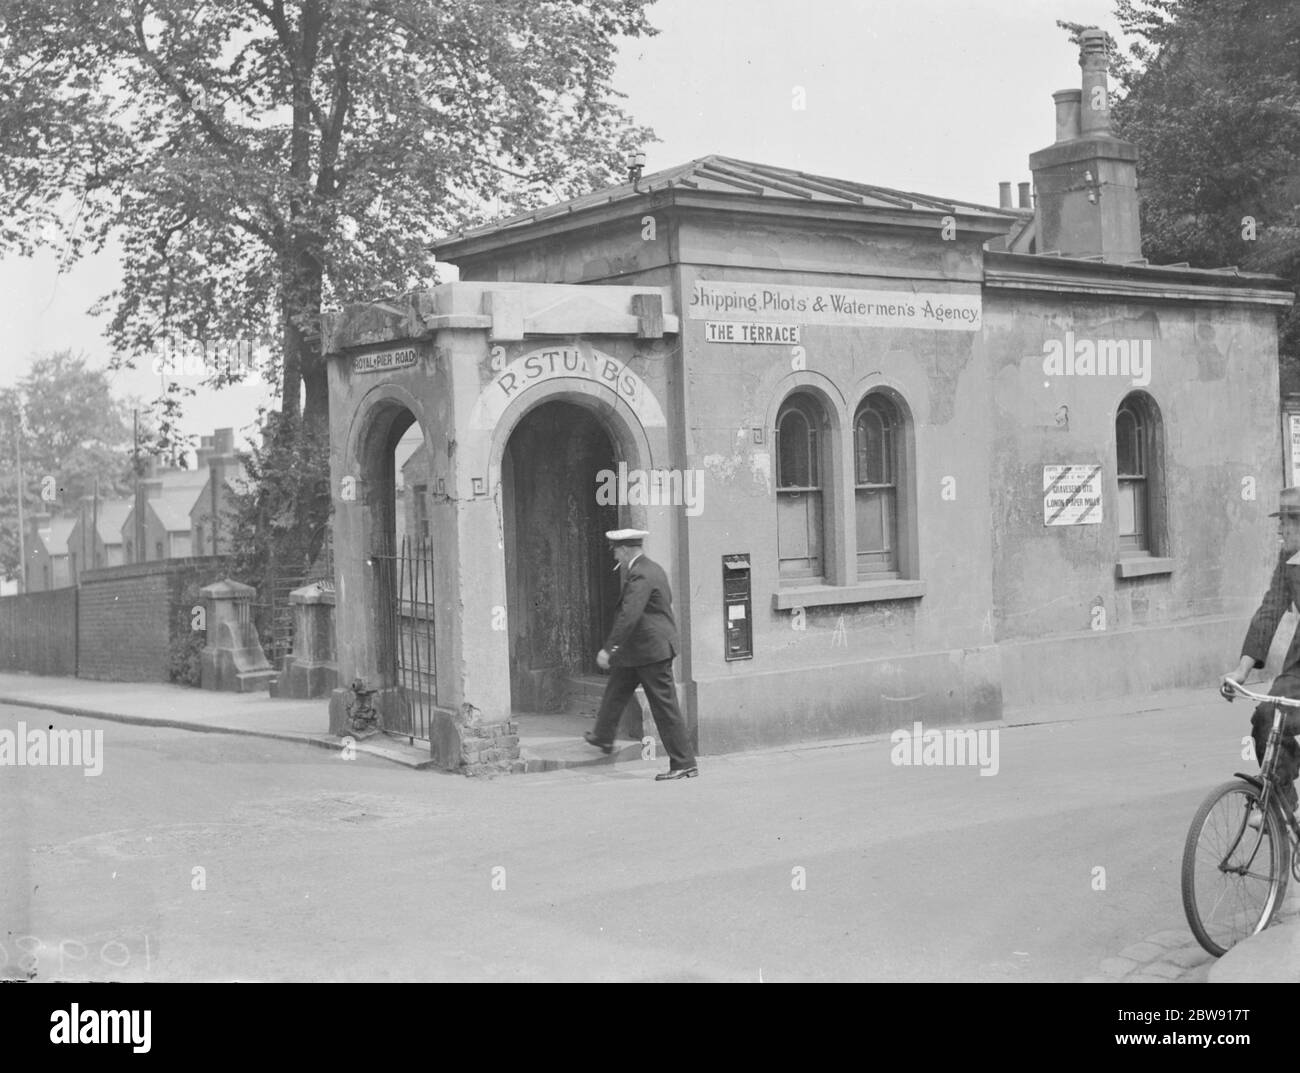 Der Eingang zu einem Gebäude, das eine Schifffahrt, Piloten und Wassermänner 's Agentur auf Royal Pier Road in Gravesend, Kent. 1939 Stockfoto